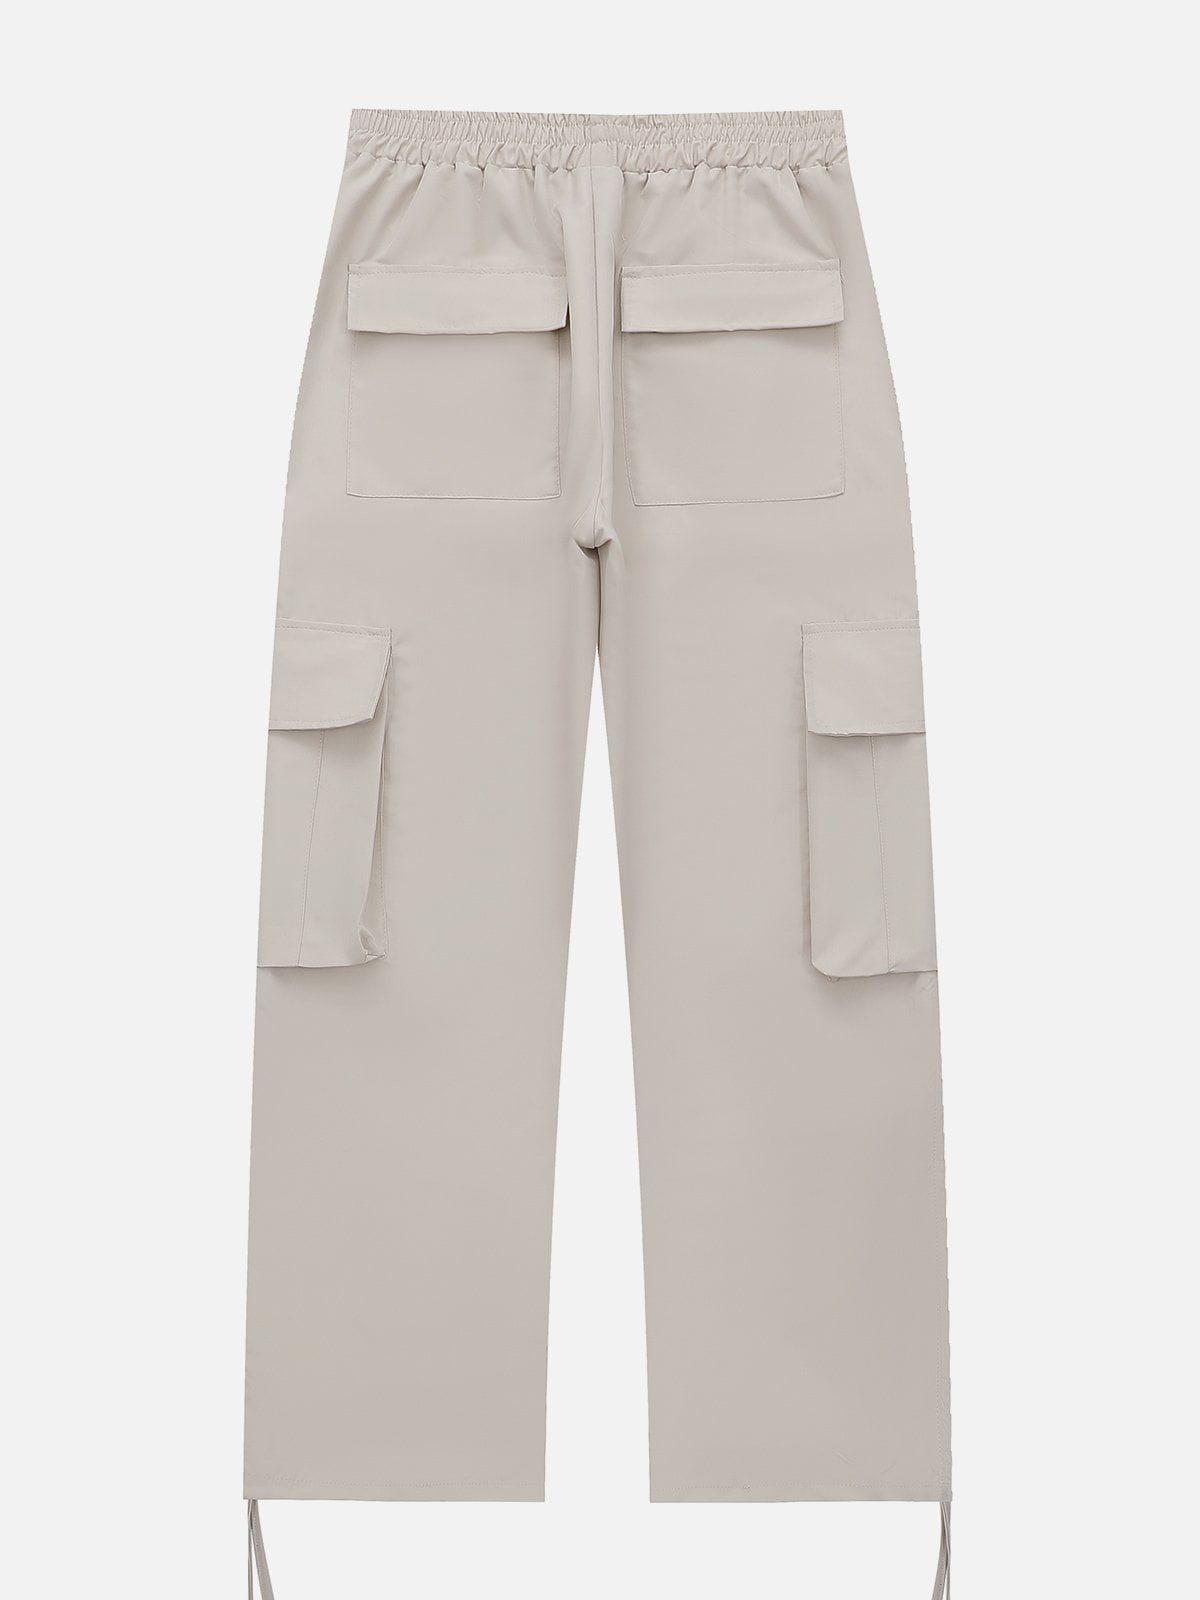 Eprezzy® - Side Pocket Drawstring Cargo Pants Streetwear Fashion - eprezzy.com